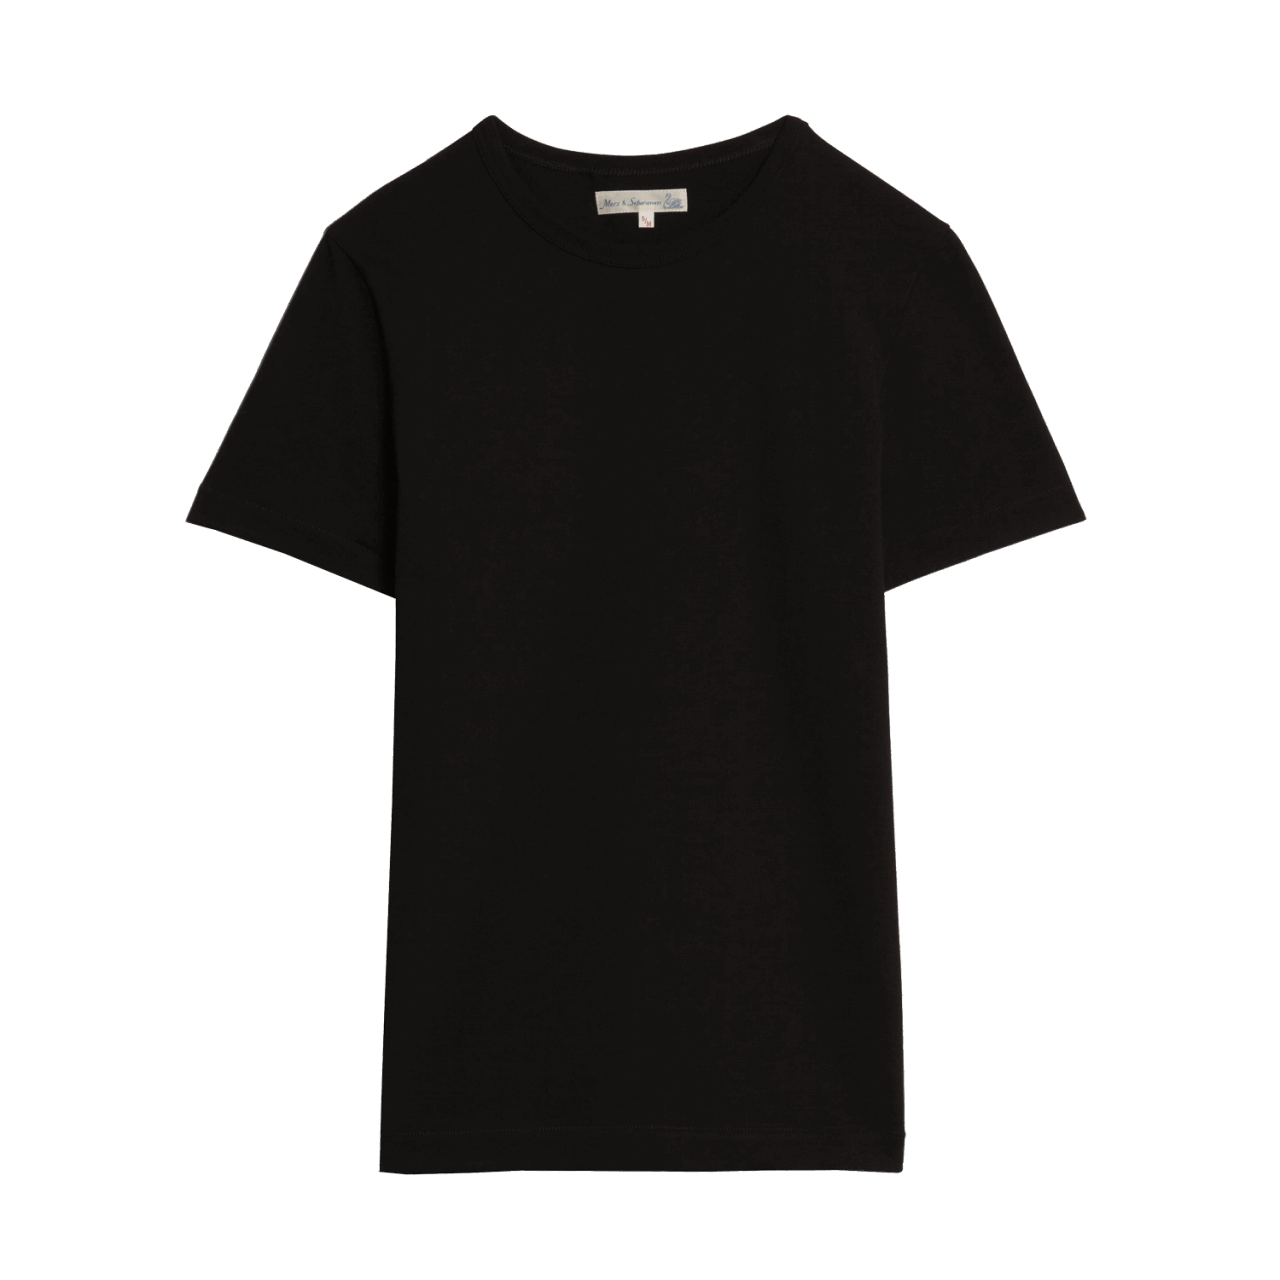 Merz b. Schwanen G.O. Rundhals T-Shirt 215 - deep black